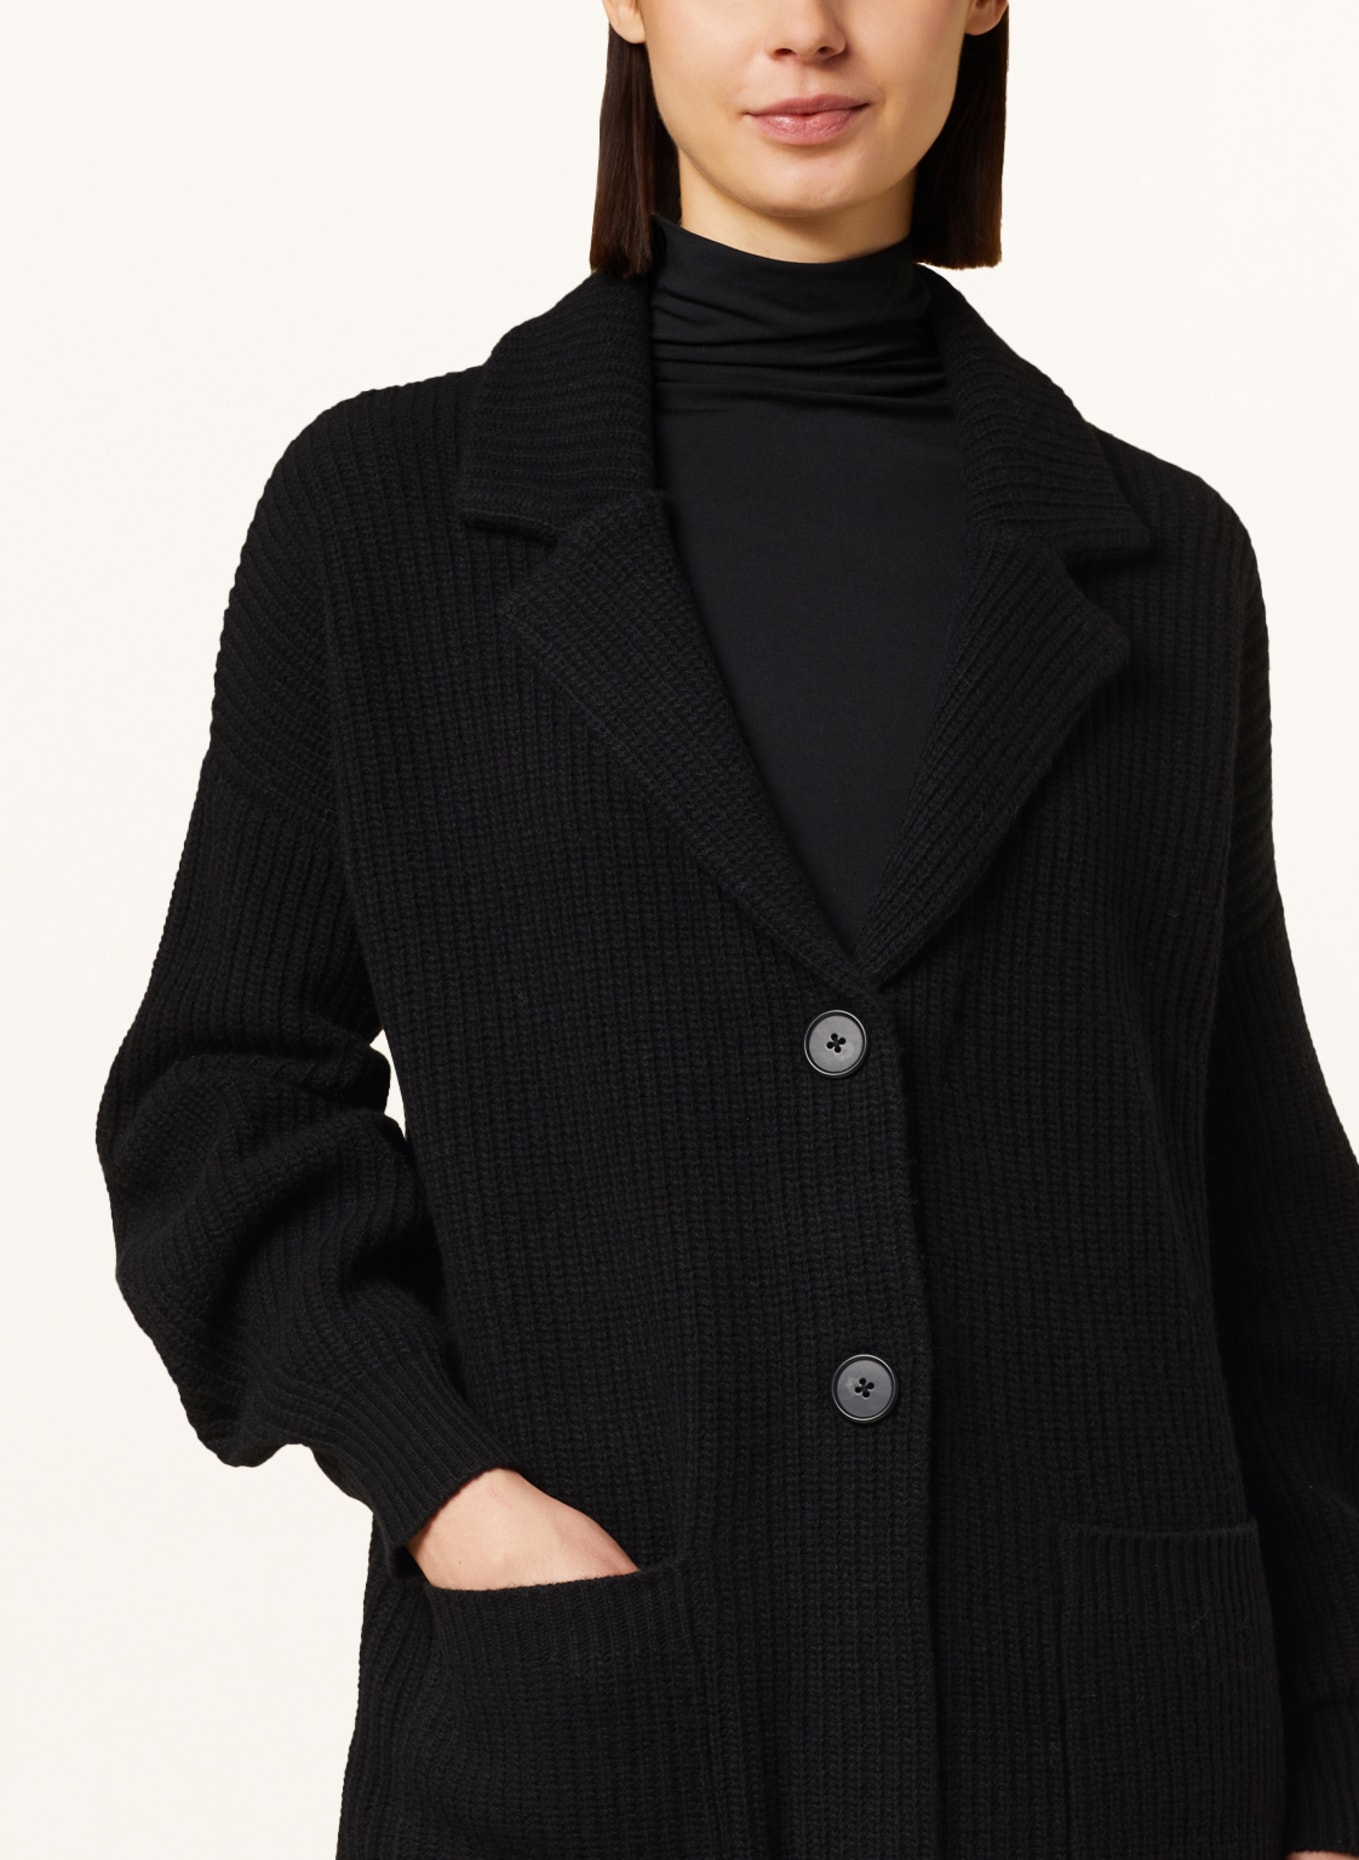 REPEAT Cardigan in merino wool, Color: BLACK (Image 4)